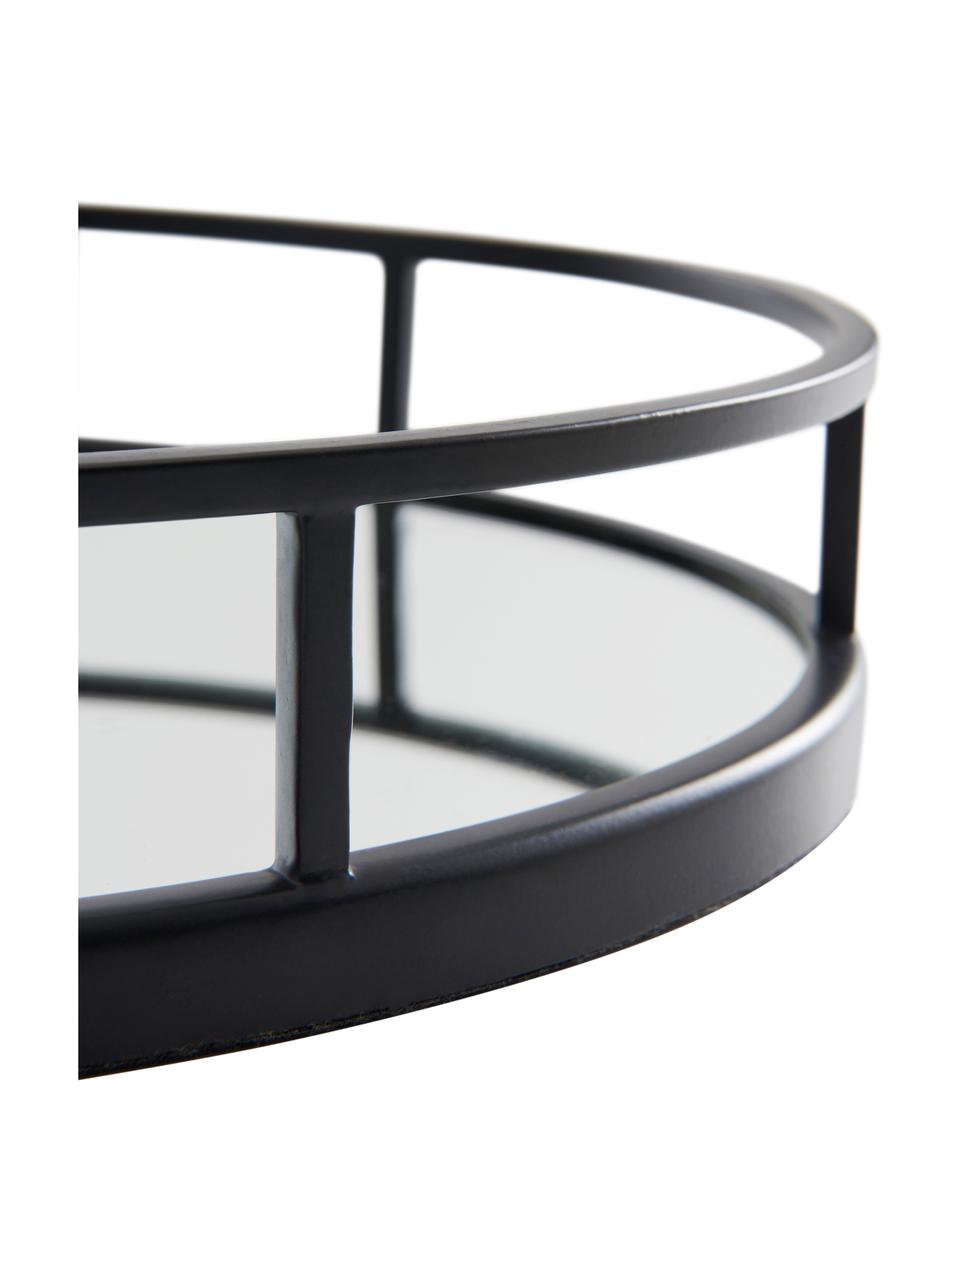 Großes, ovales Deko-Tablett Jemma, Rahmen: Metall, beschichtet, Ablagefläche: Spiegelglas, Schwarz, B 38 x H 6 cm